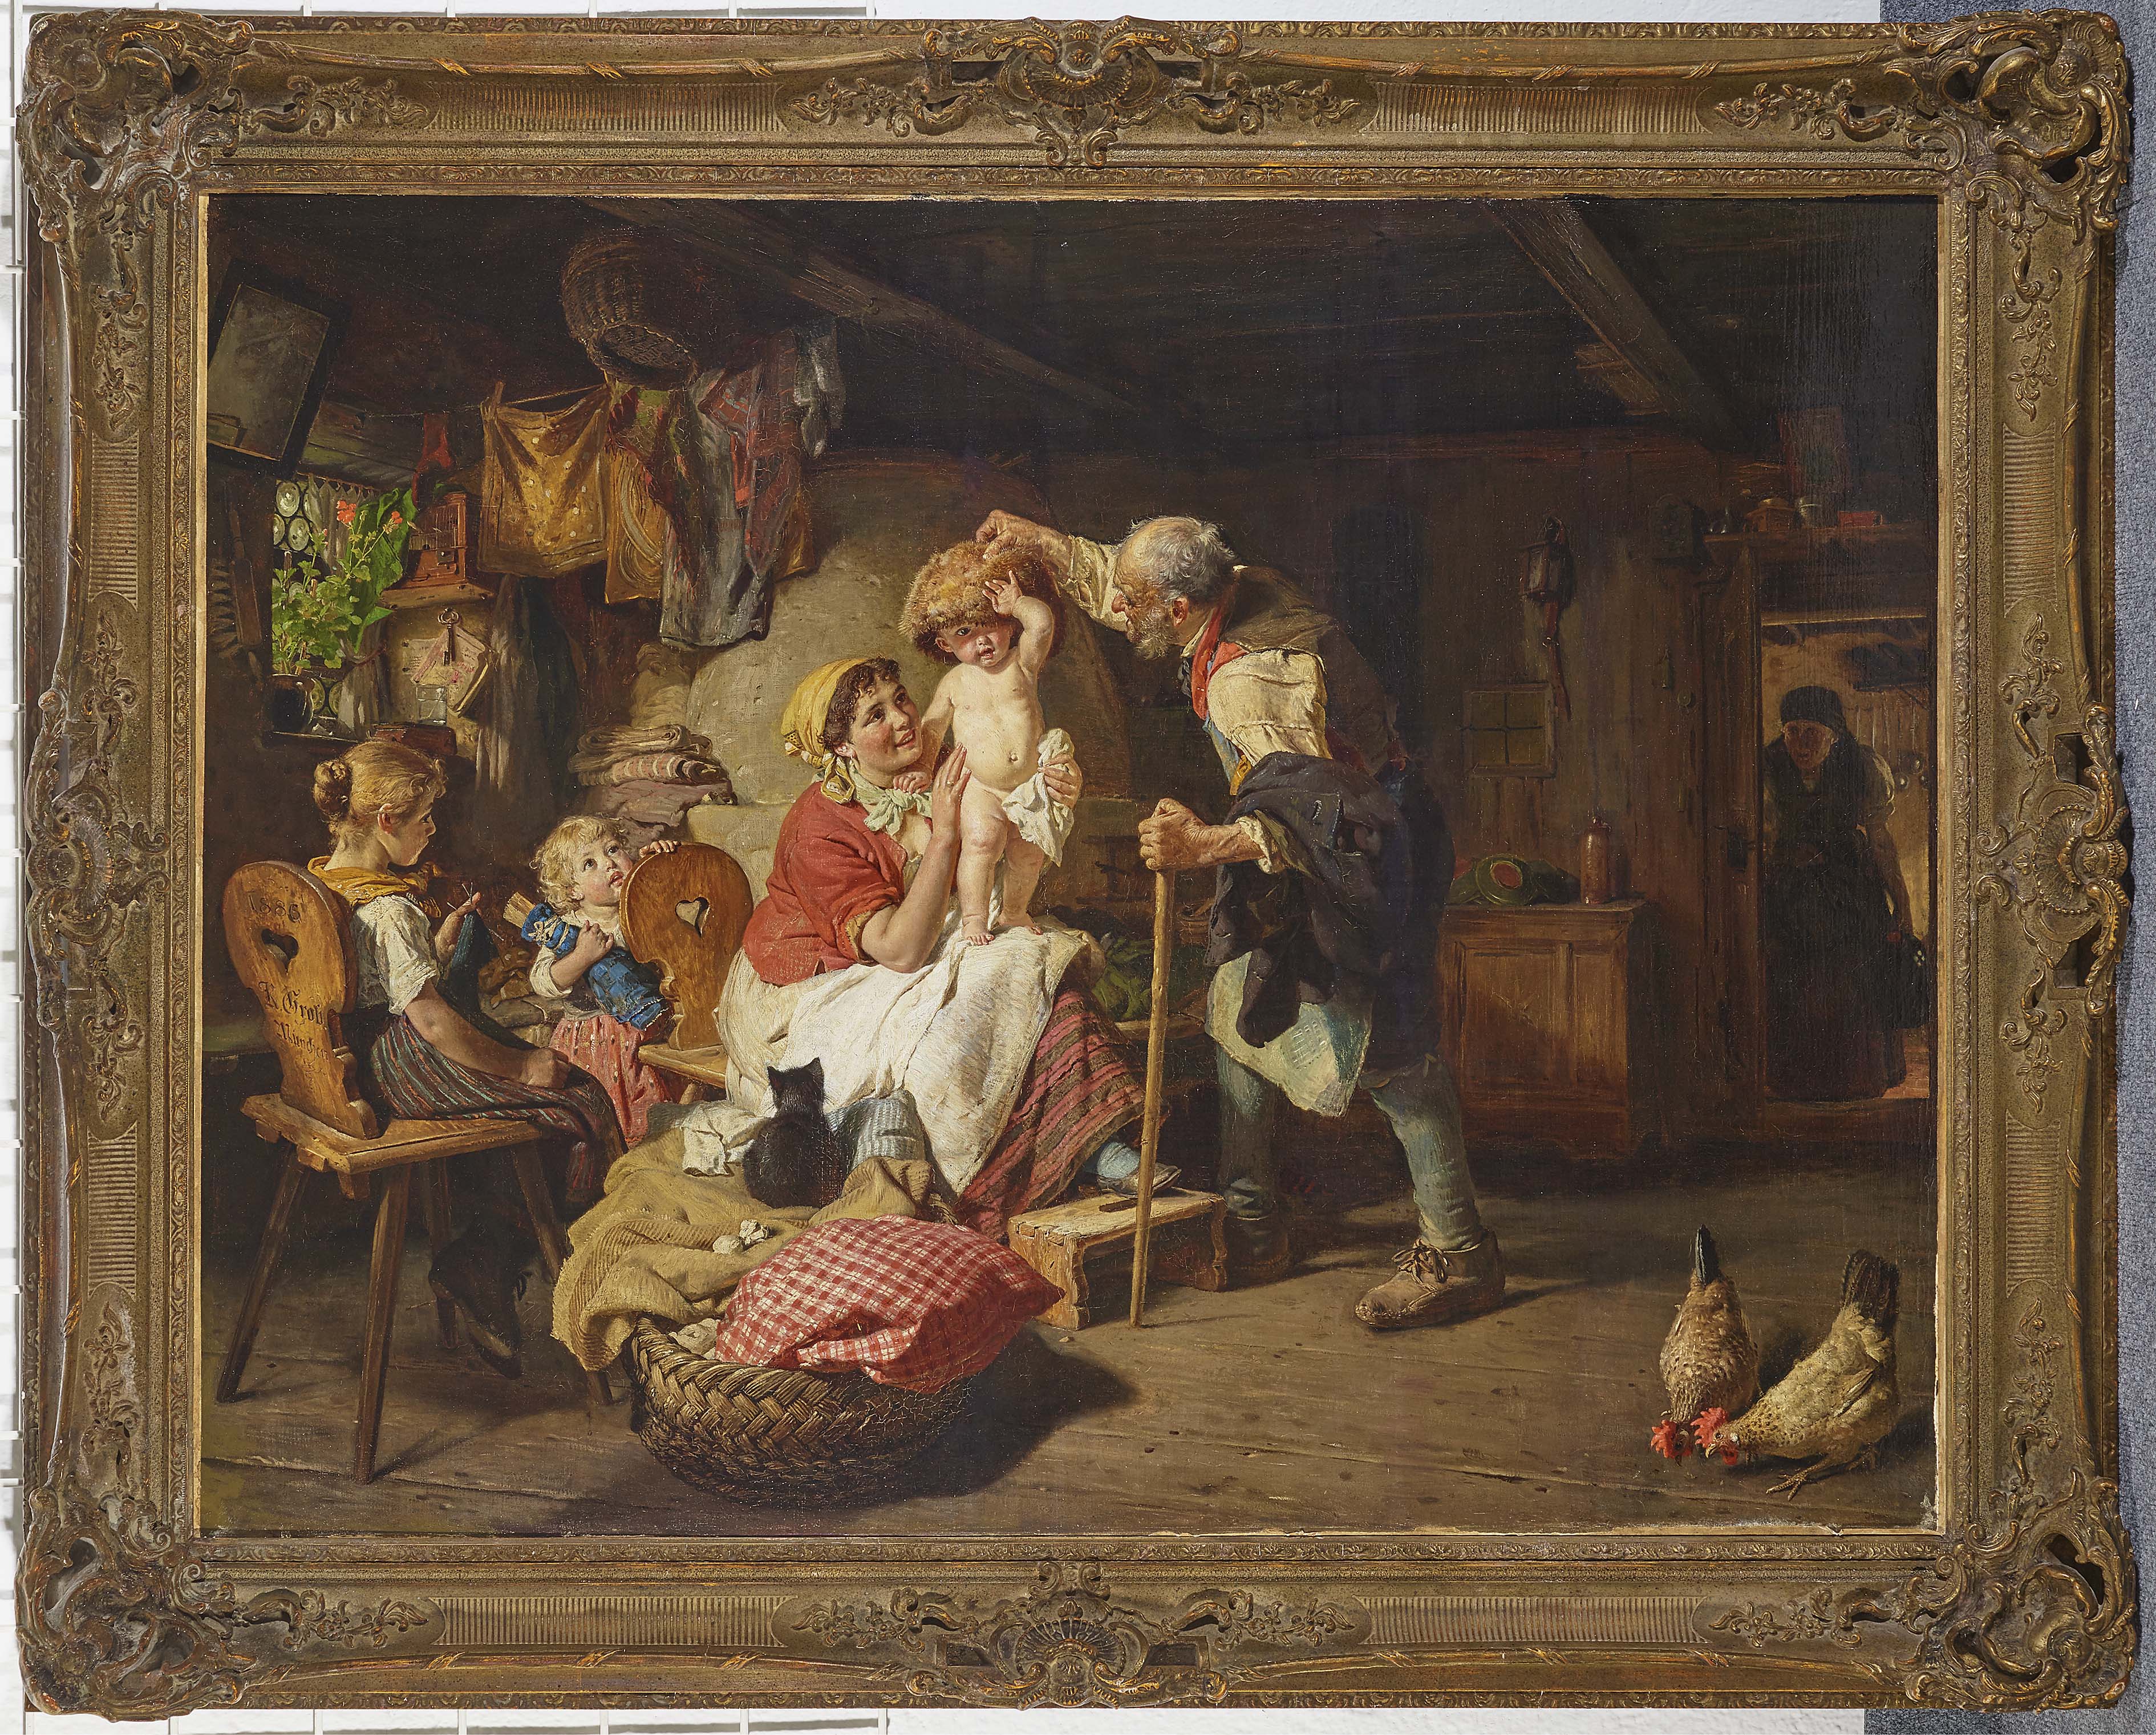 Bauernfamilie - in 378 Stube der Konrad Auktion | Grob